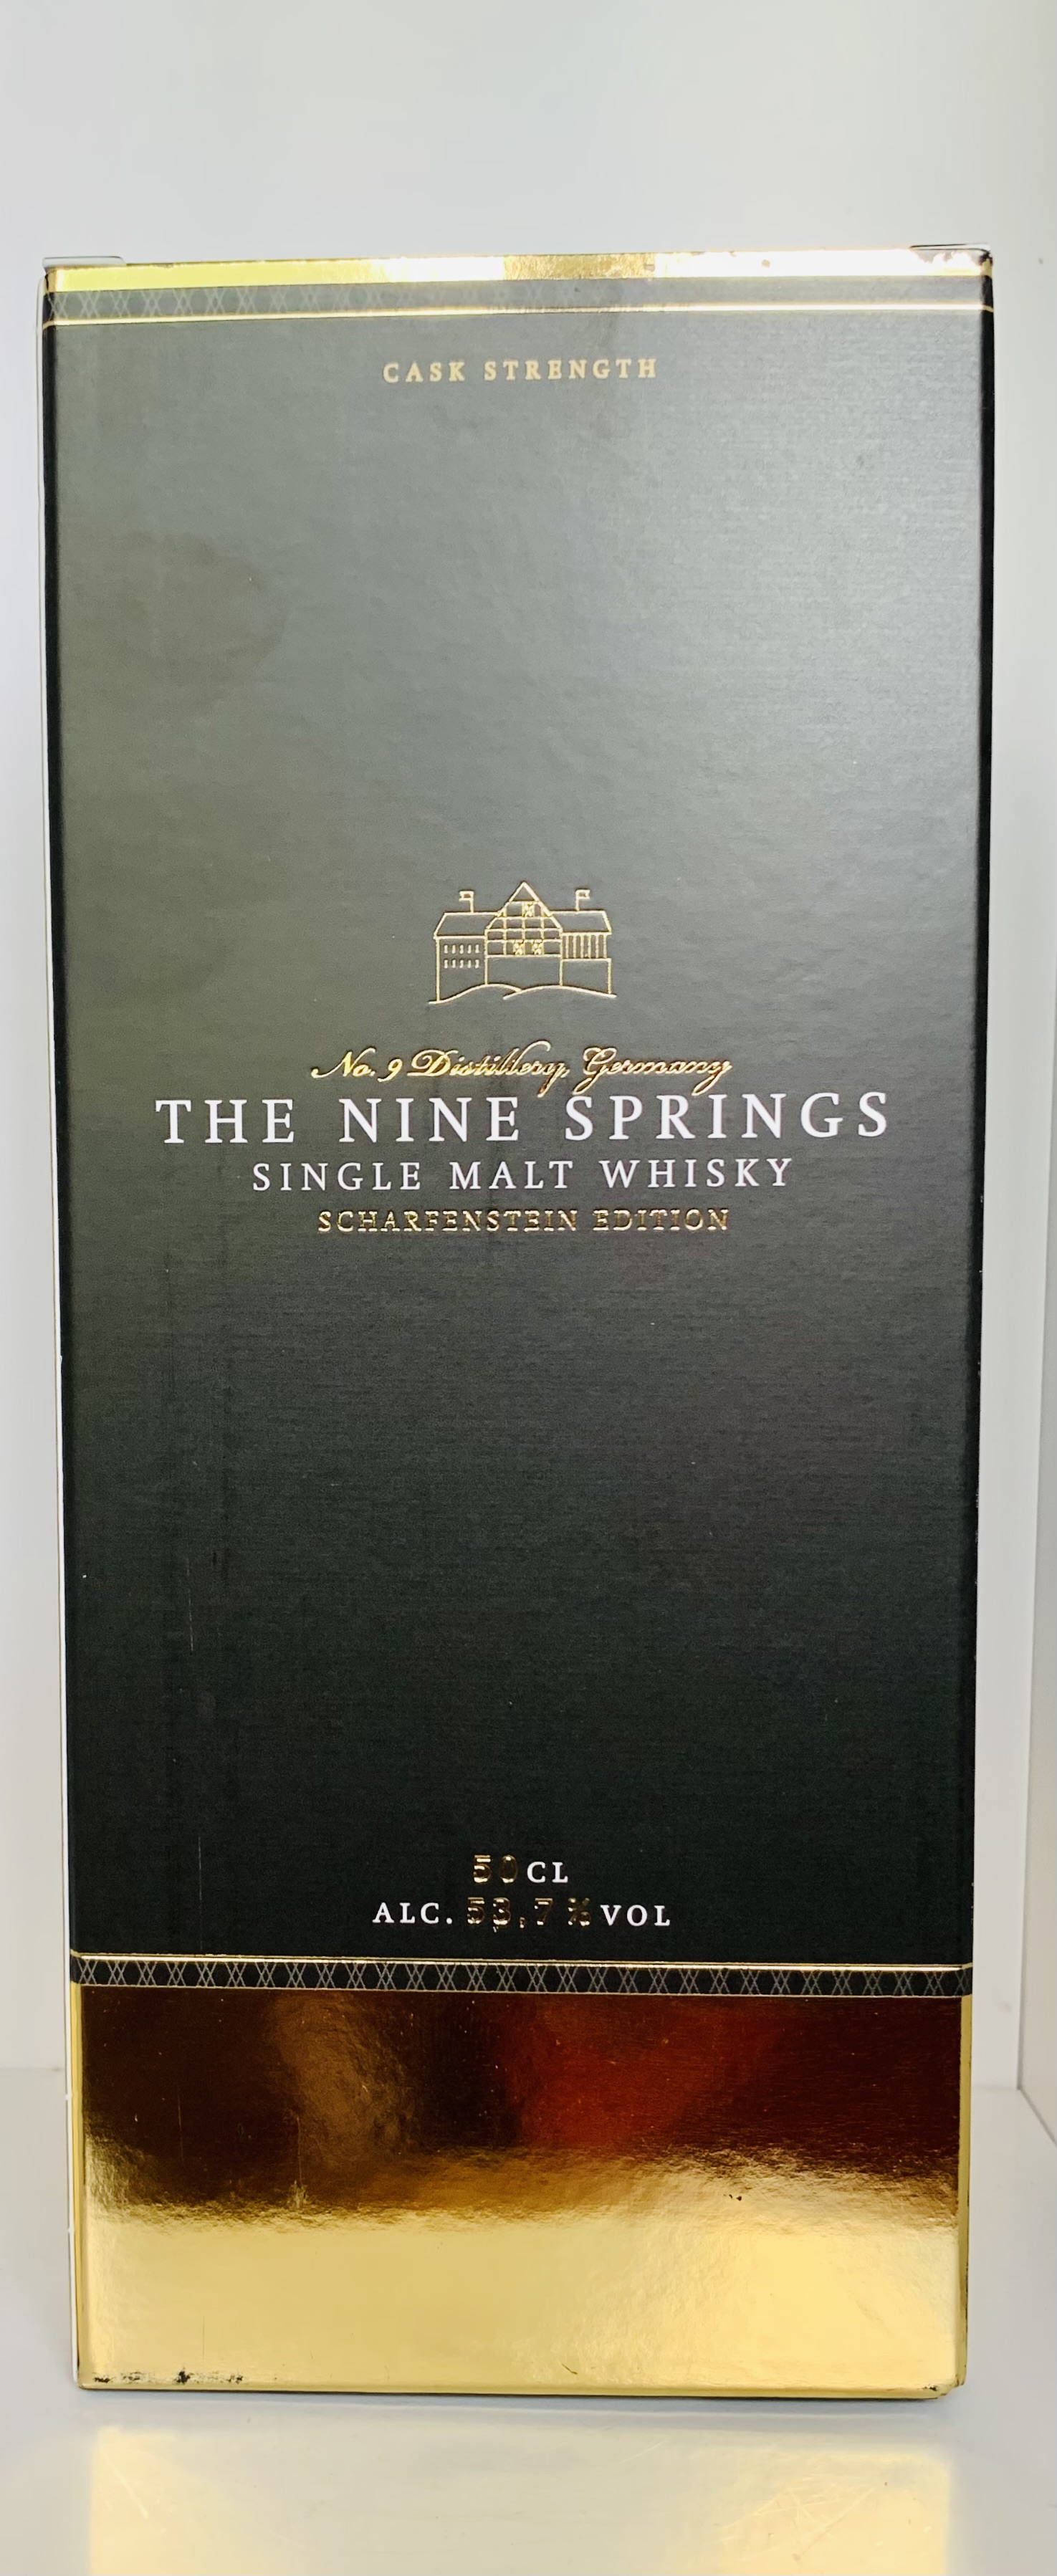 The Nine Springs Scharfenstein Edition No.2